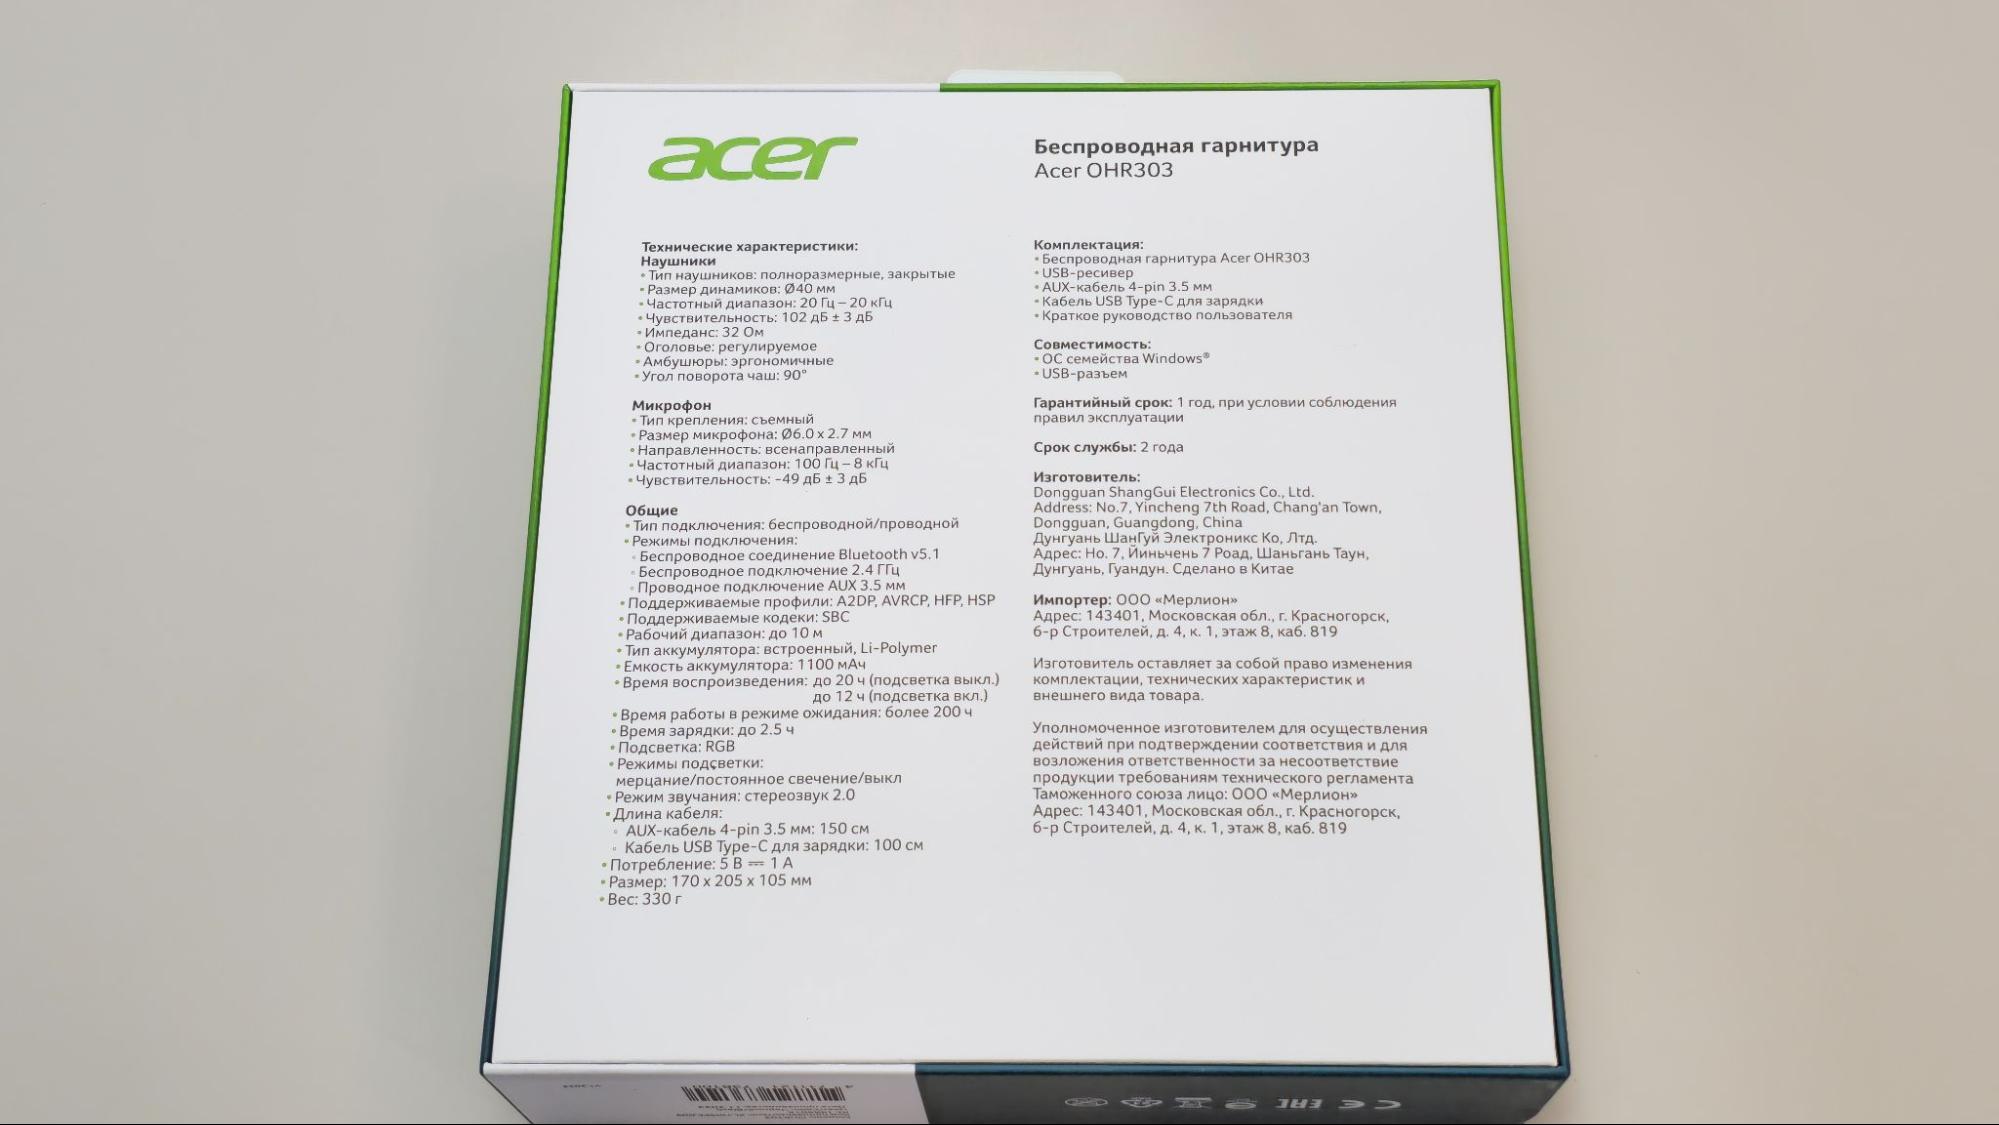 Обзор беспроводной гарнитуры Acer OHR303